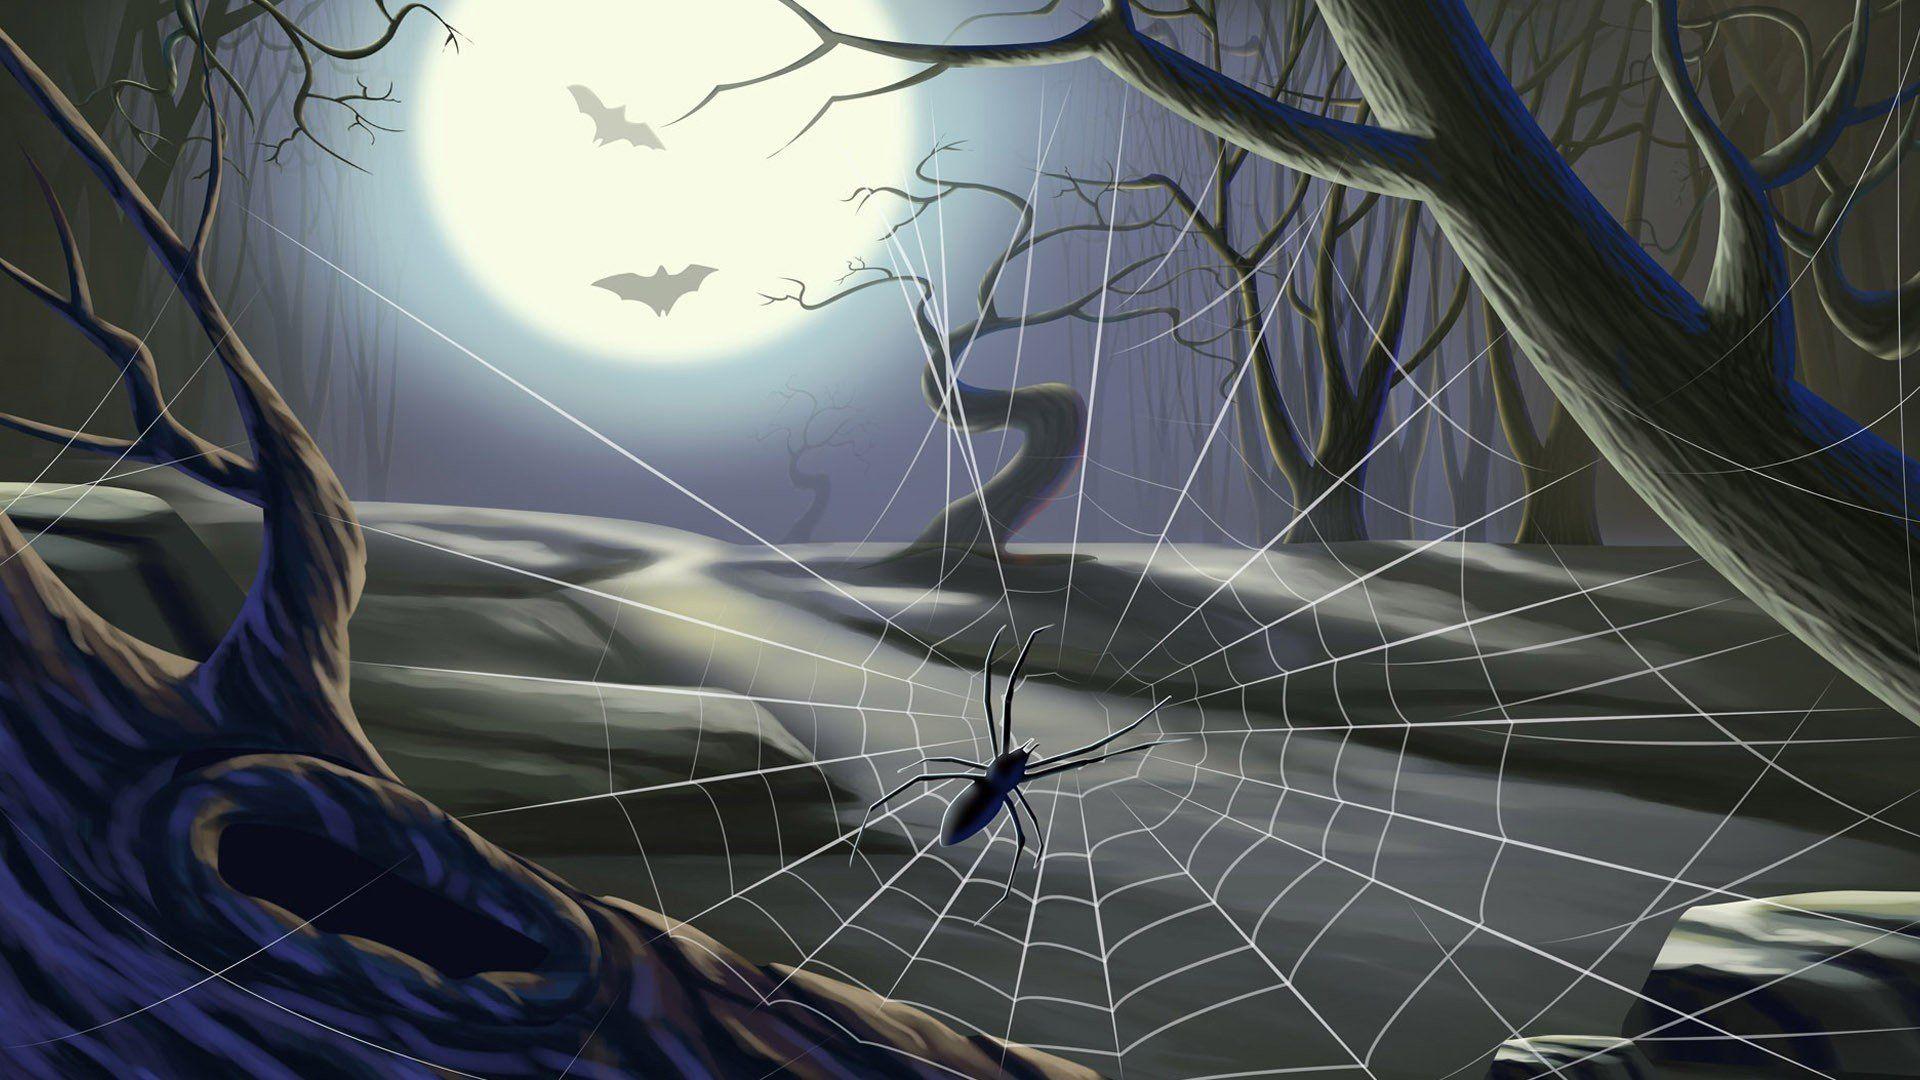 halloween spider wallpapers top free halloween spider on halloween spider wallpapers